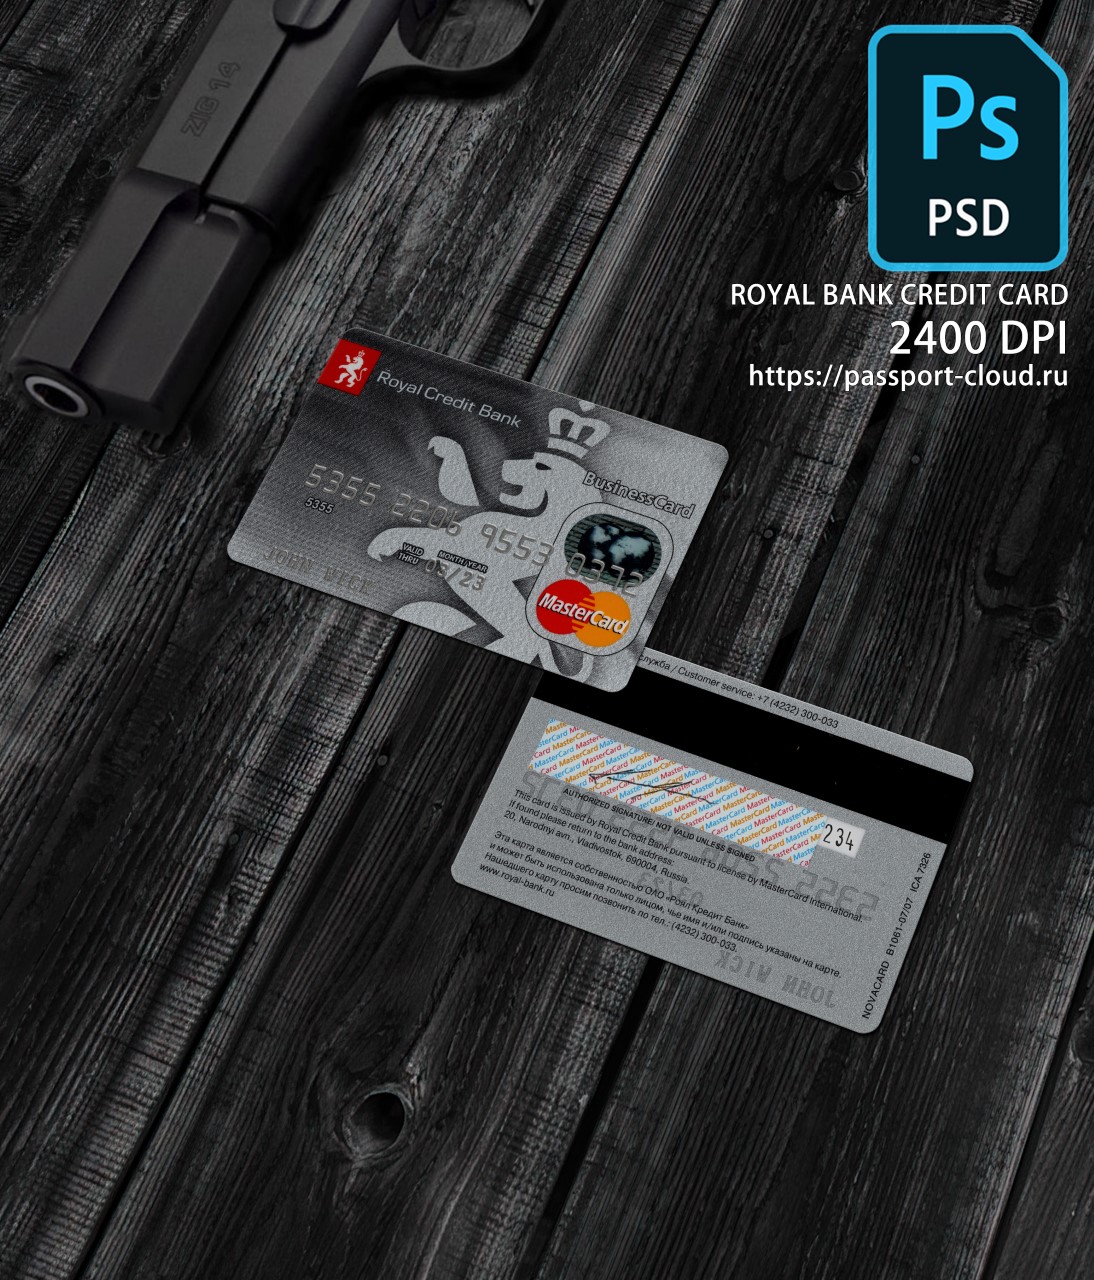 Royal Bank Credit Card PSD1